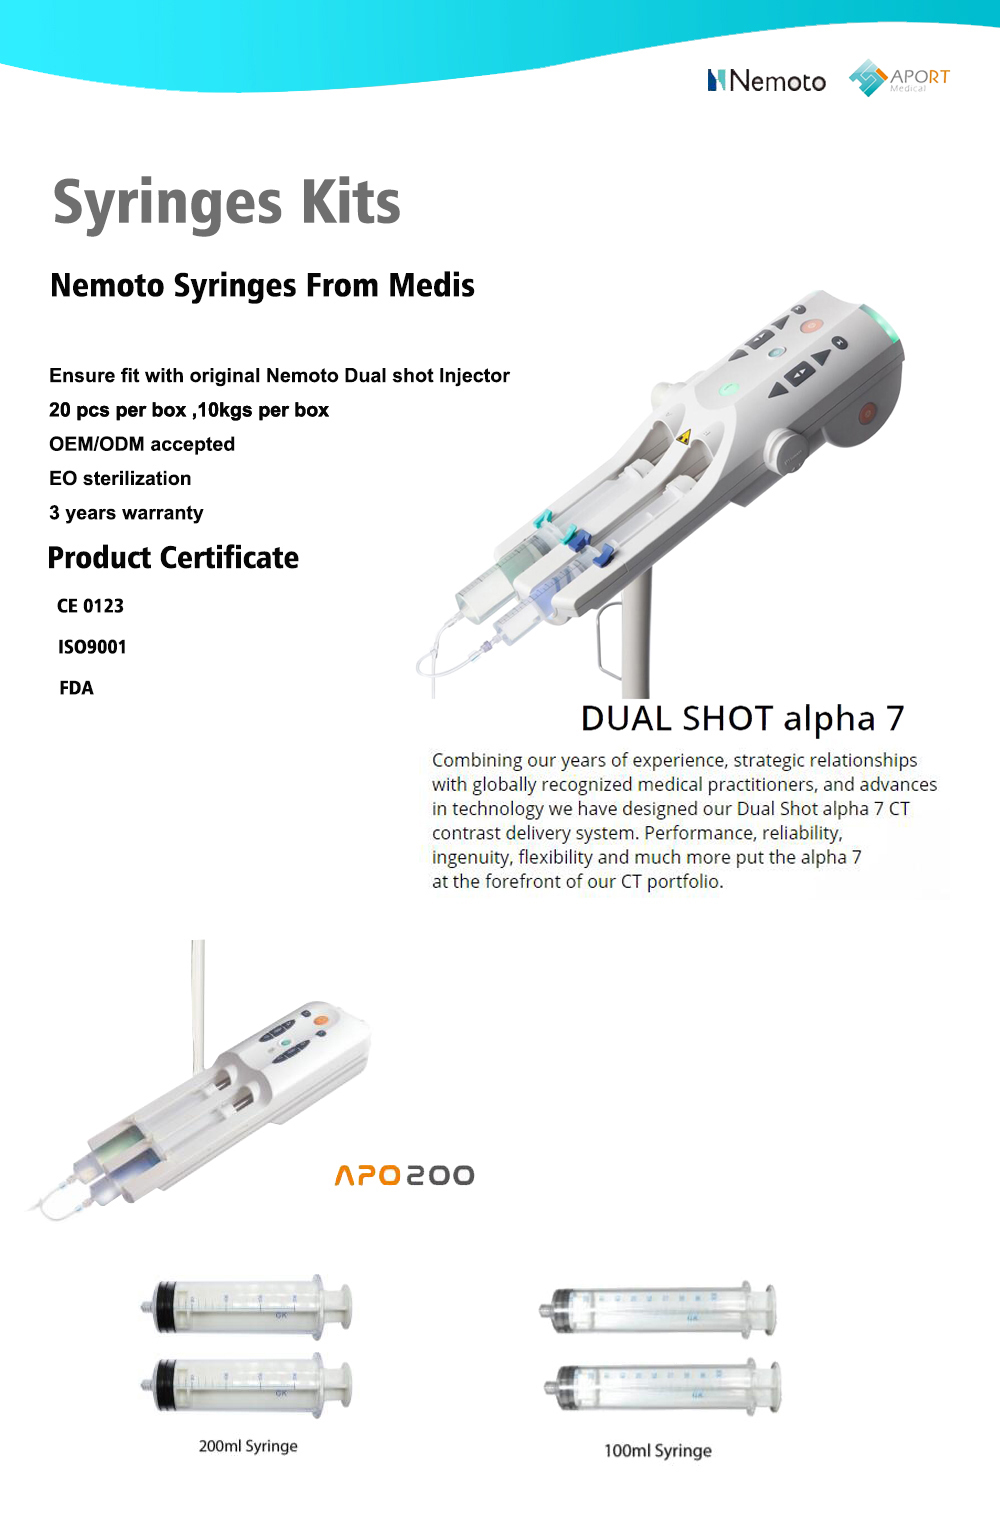 C855-5258 Injetores de contraste Nemoto Dual Shot GX 50ml / 200ml Seringas angiográficas de alta pressão